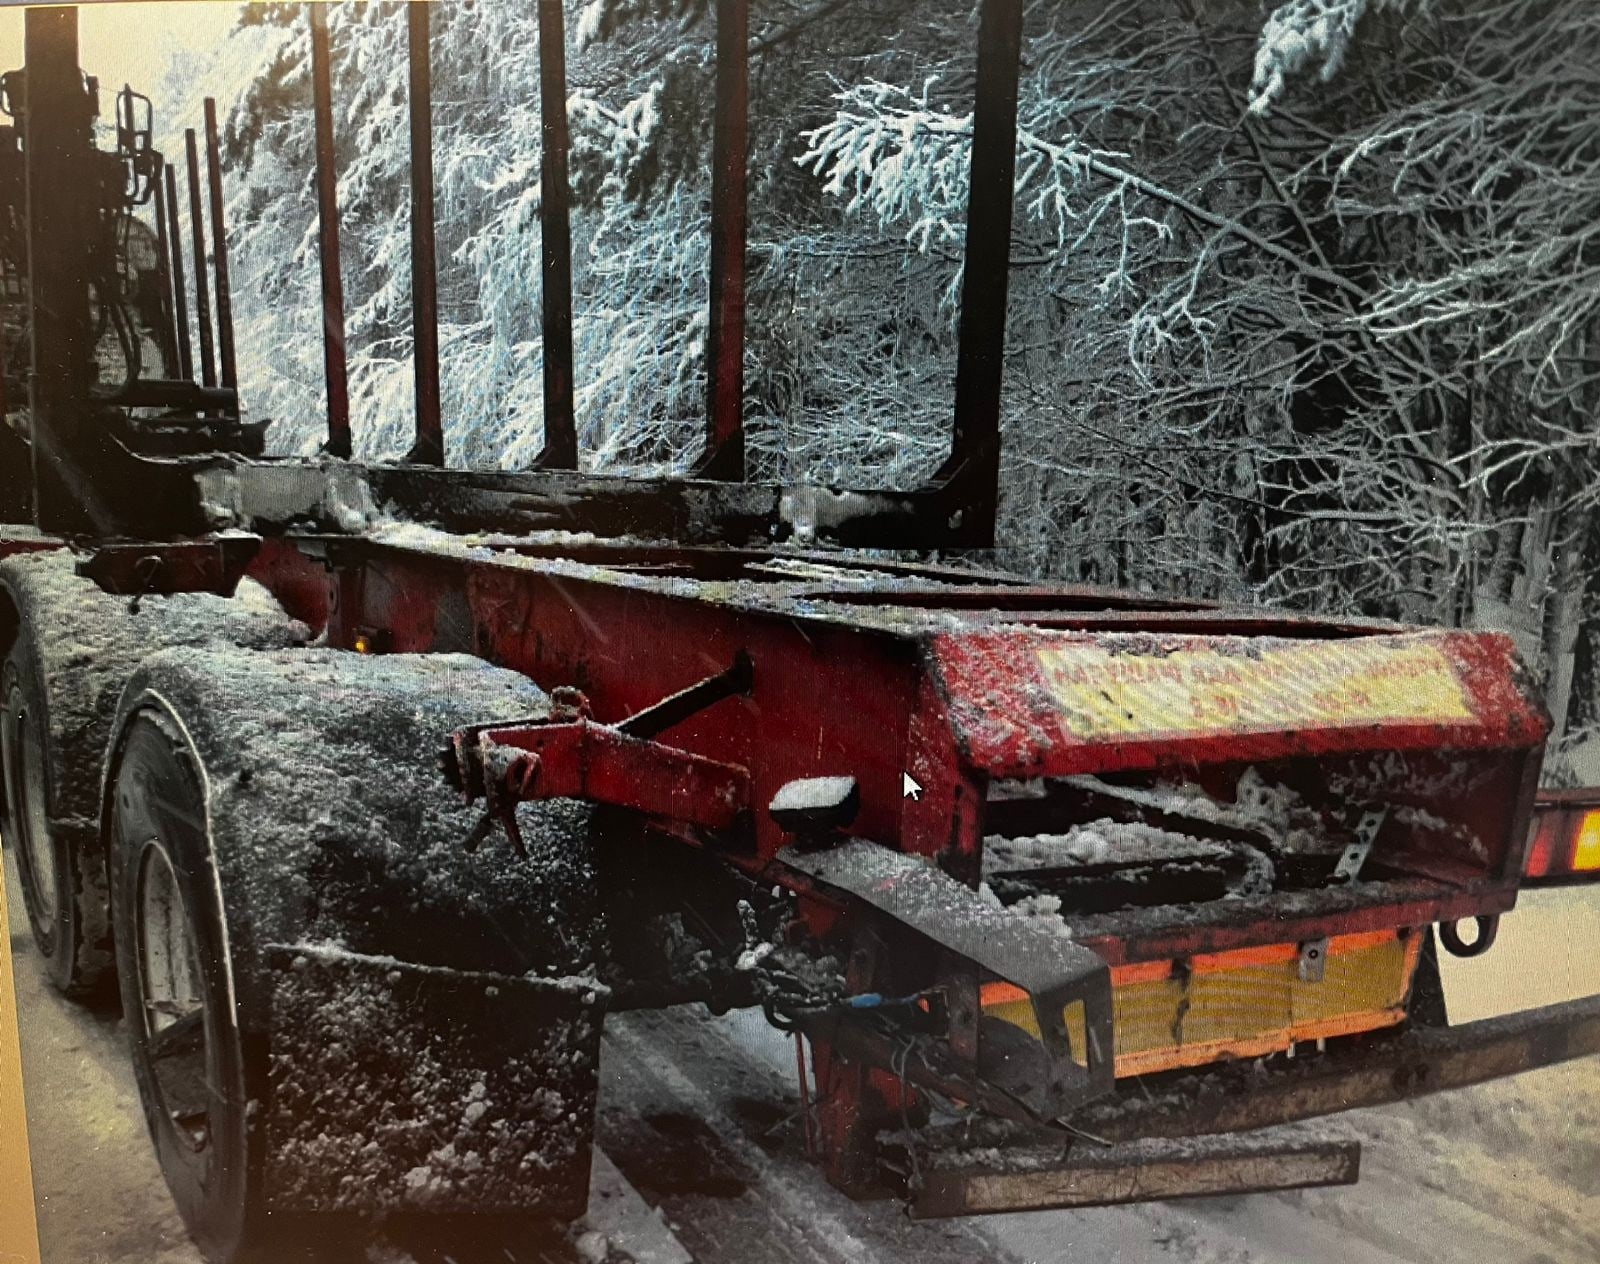 Водителю лесовоза, виновному в смертельной аварии в Карелии, запретили садиться за руль